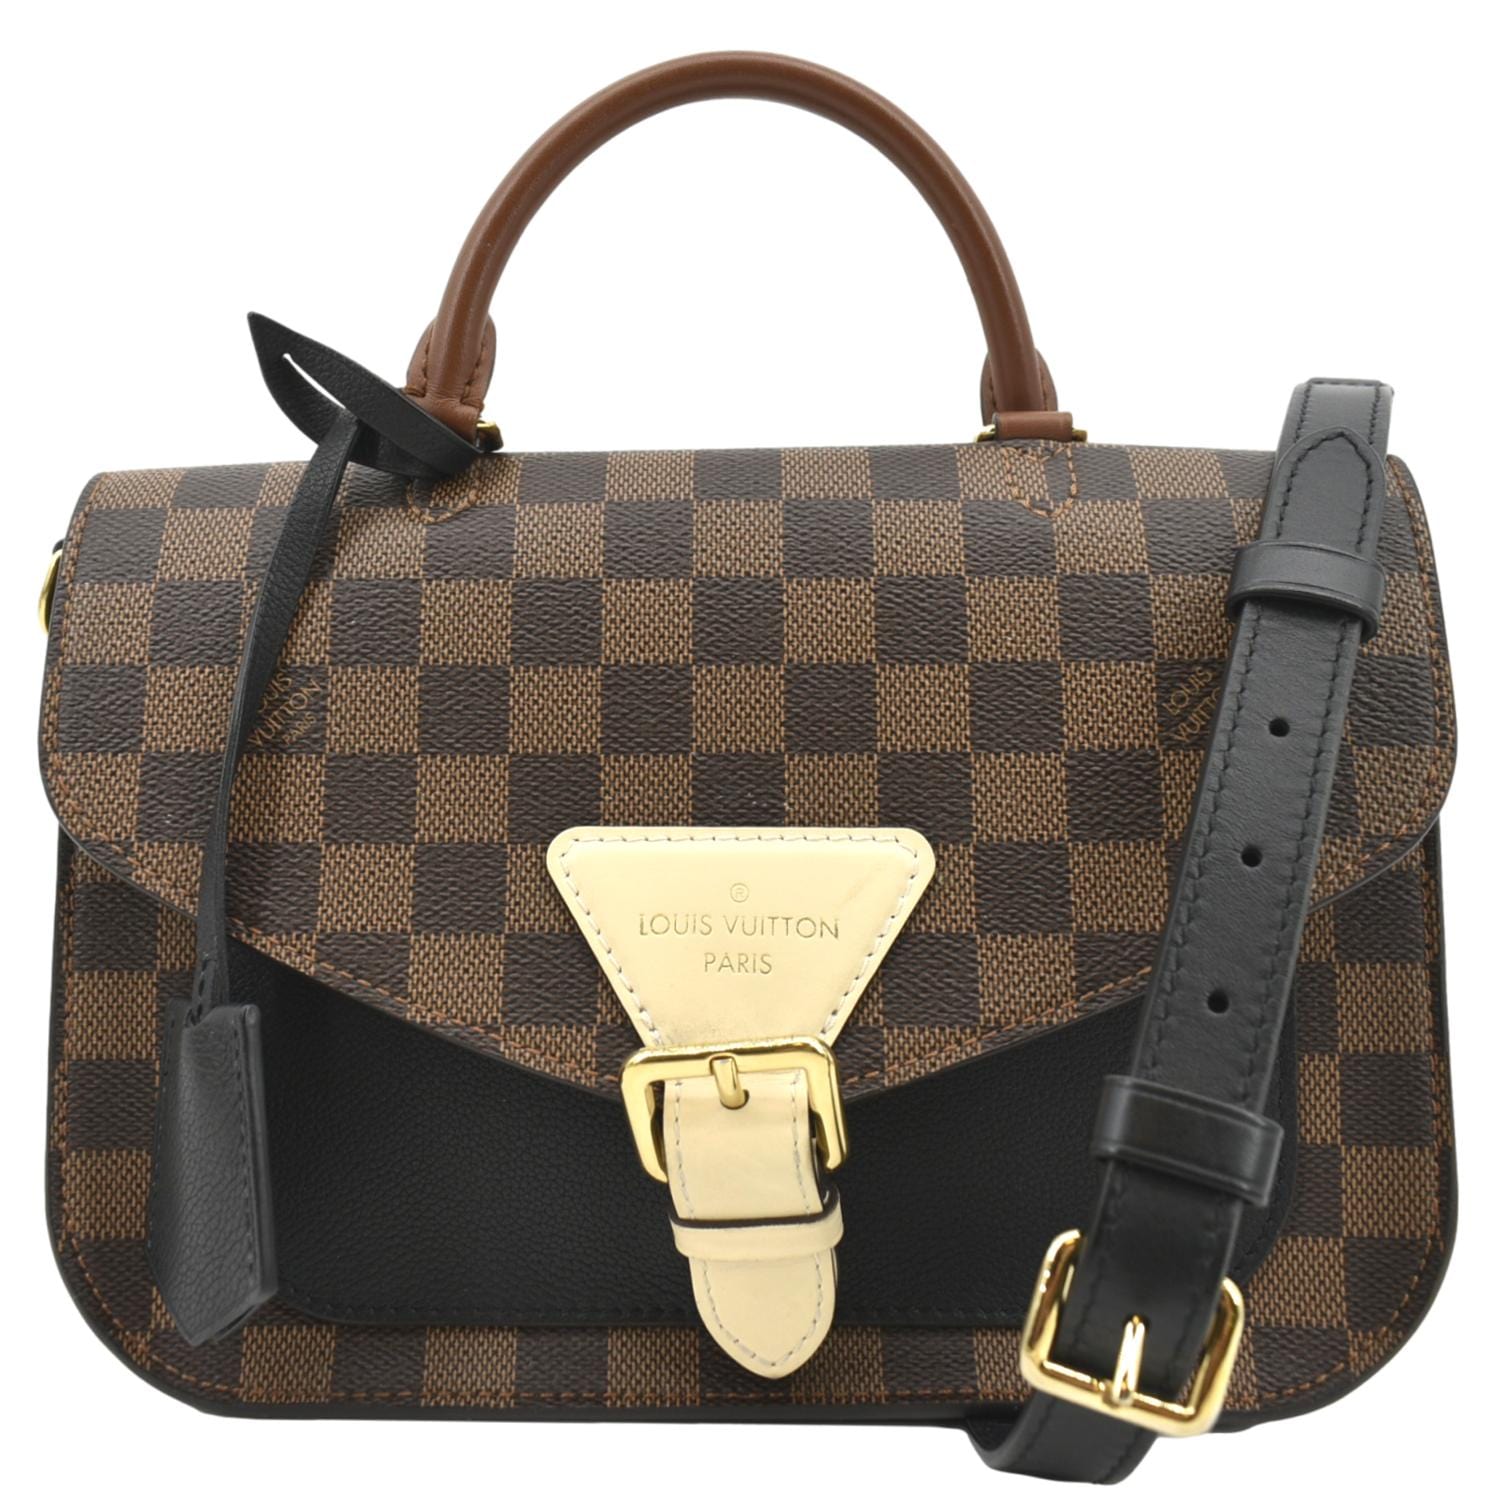 Louis Vuitton Louis Vuitton Beaumarchais handbag